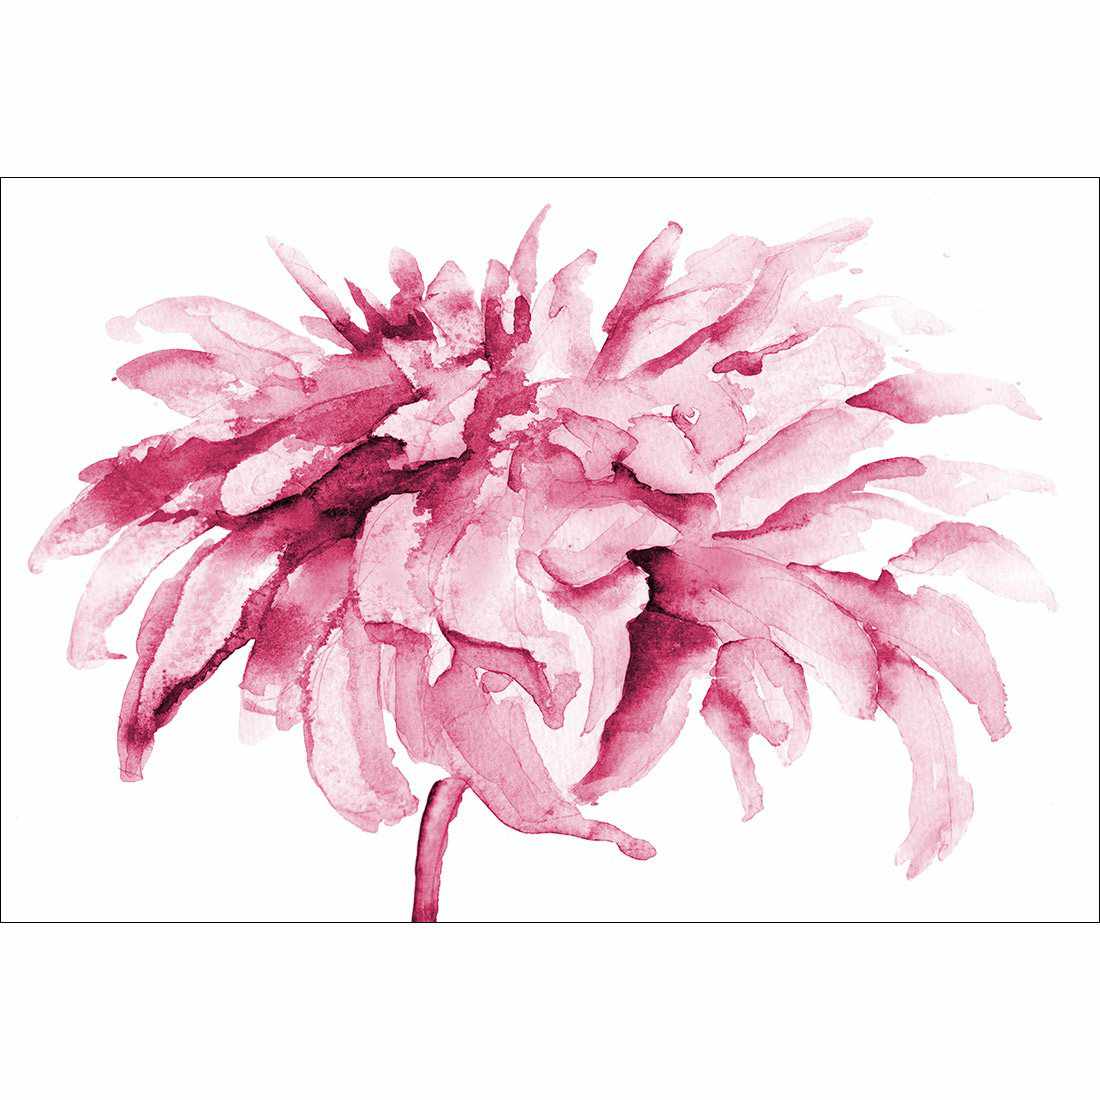 Fairy Floss, Pink Canvas Art-Canvas-Wall Art Designs-45x30cm-Rolled Canvas-Wall Art Designs